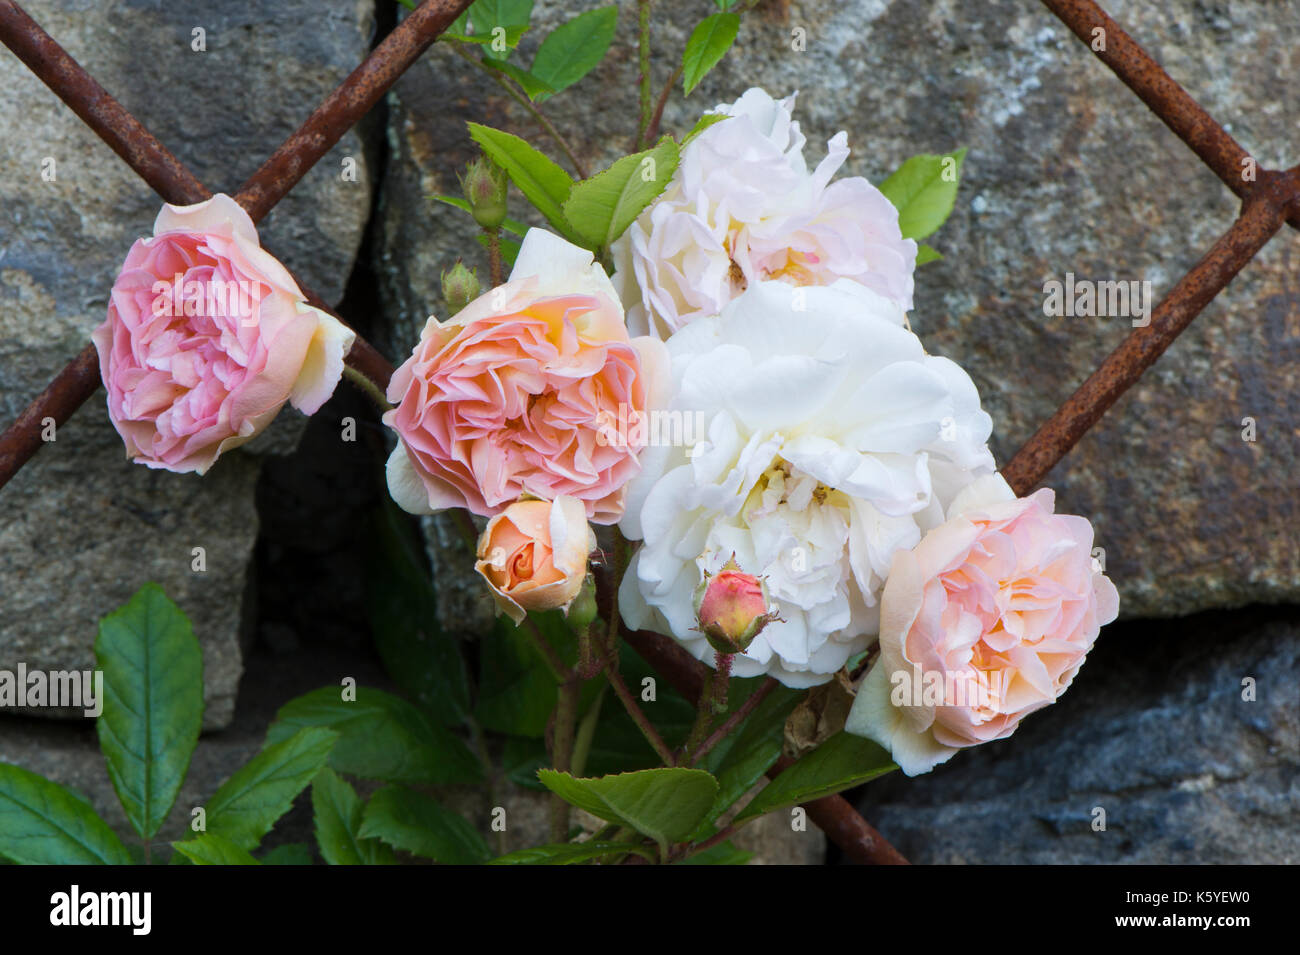 Schöne, private, traditionellen, ländlichen Garten, West Yorkshire, England, UK-Sommer blühende Pflanzen (blassrosa Rosen) in Nahaufnahme auf Metall rankgitter. Stockfoto